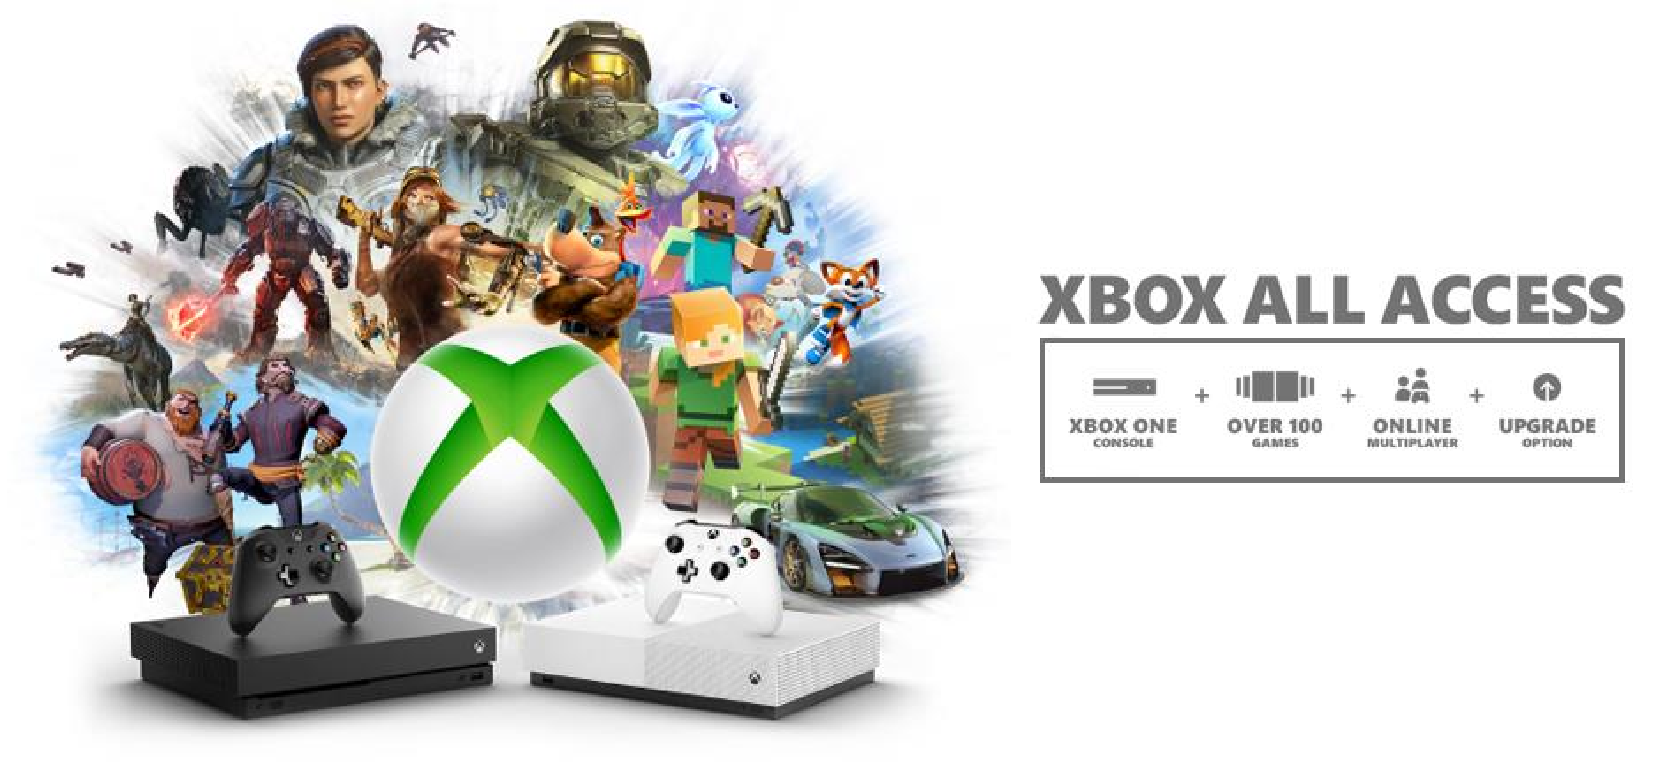 Xbox All Access graphic